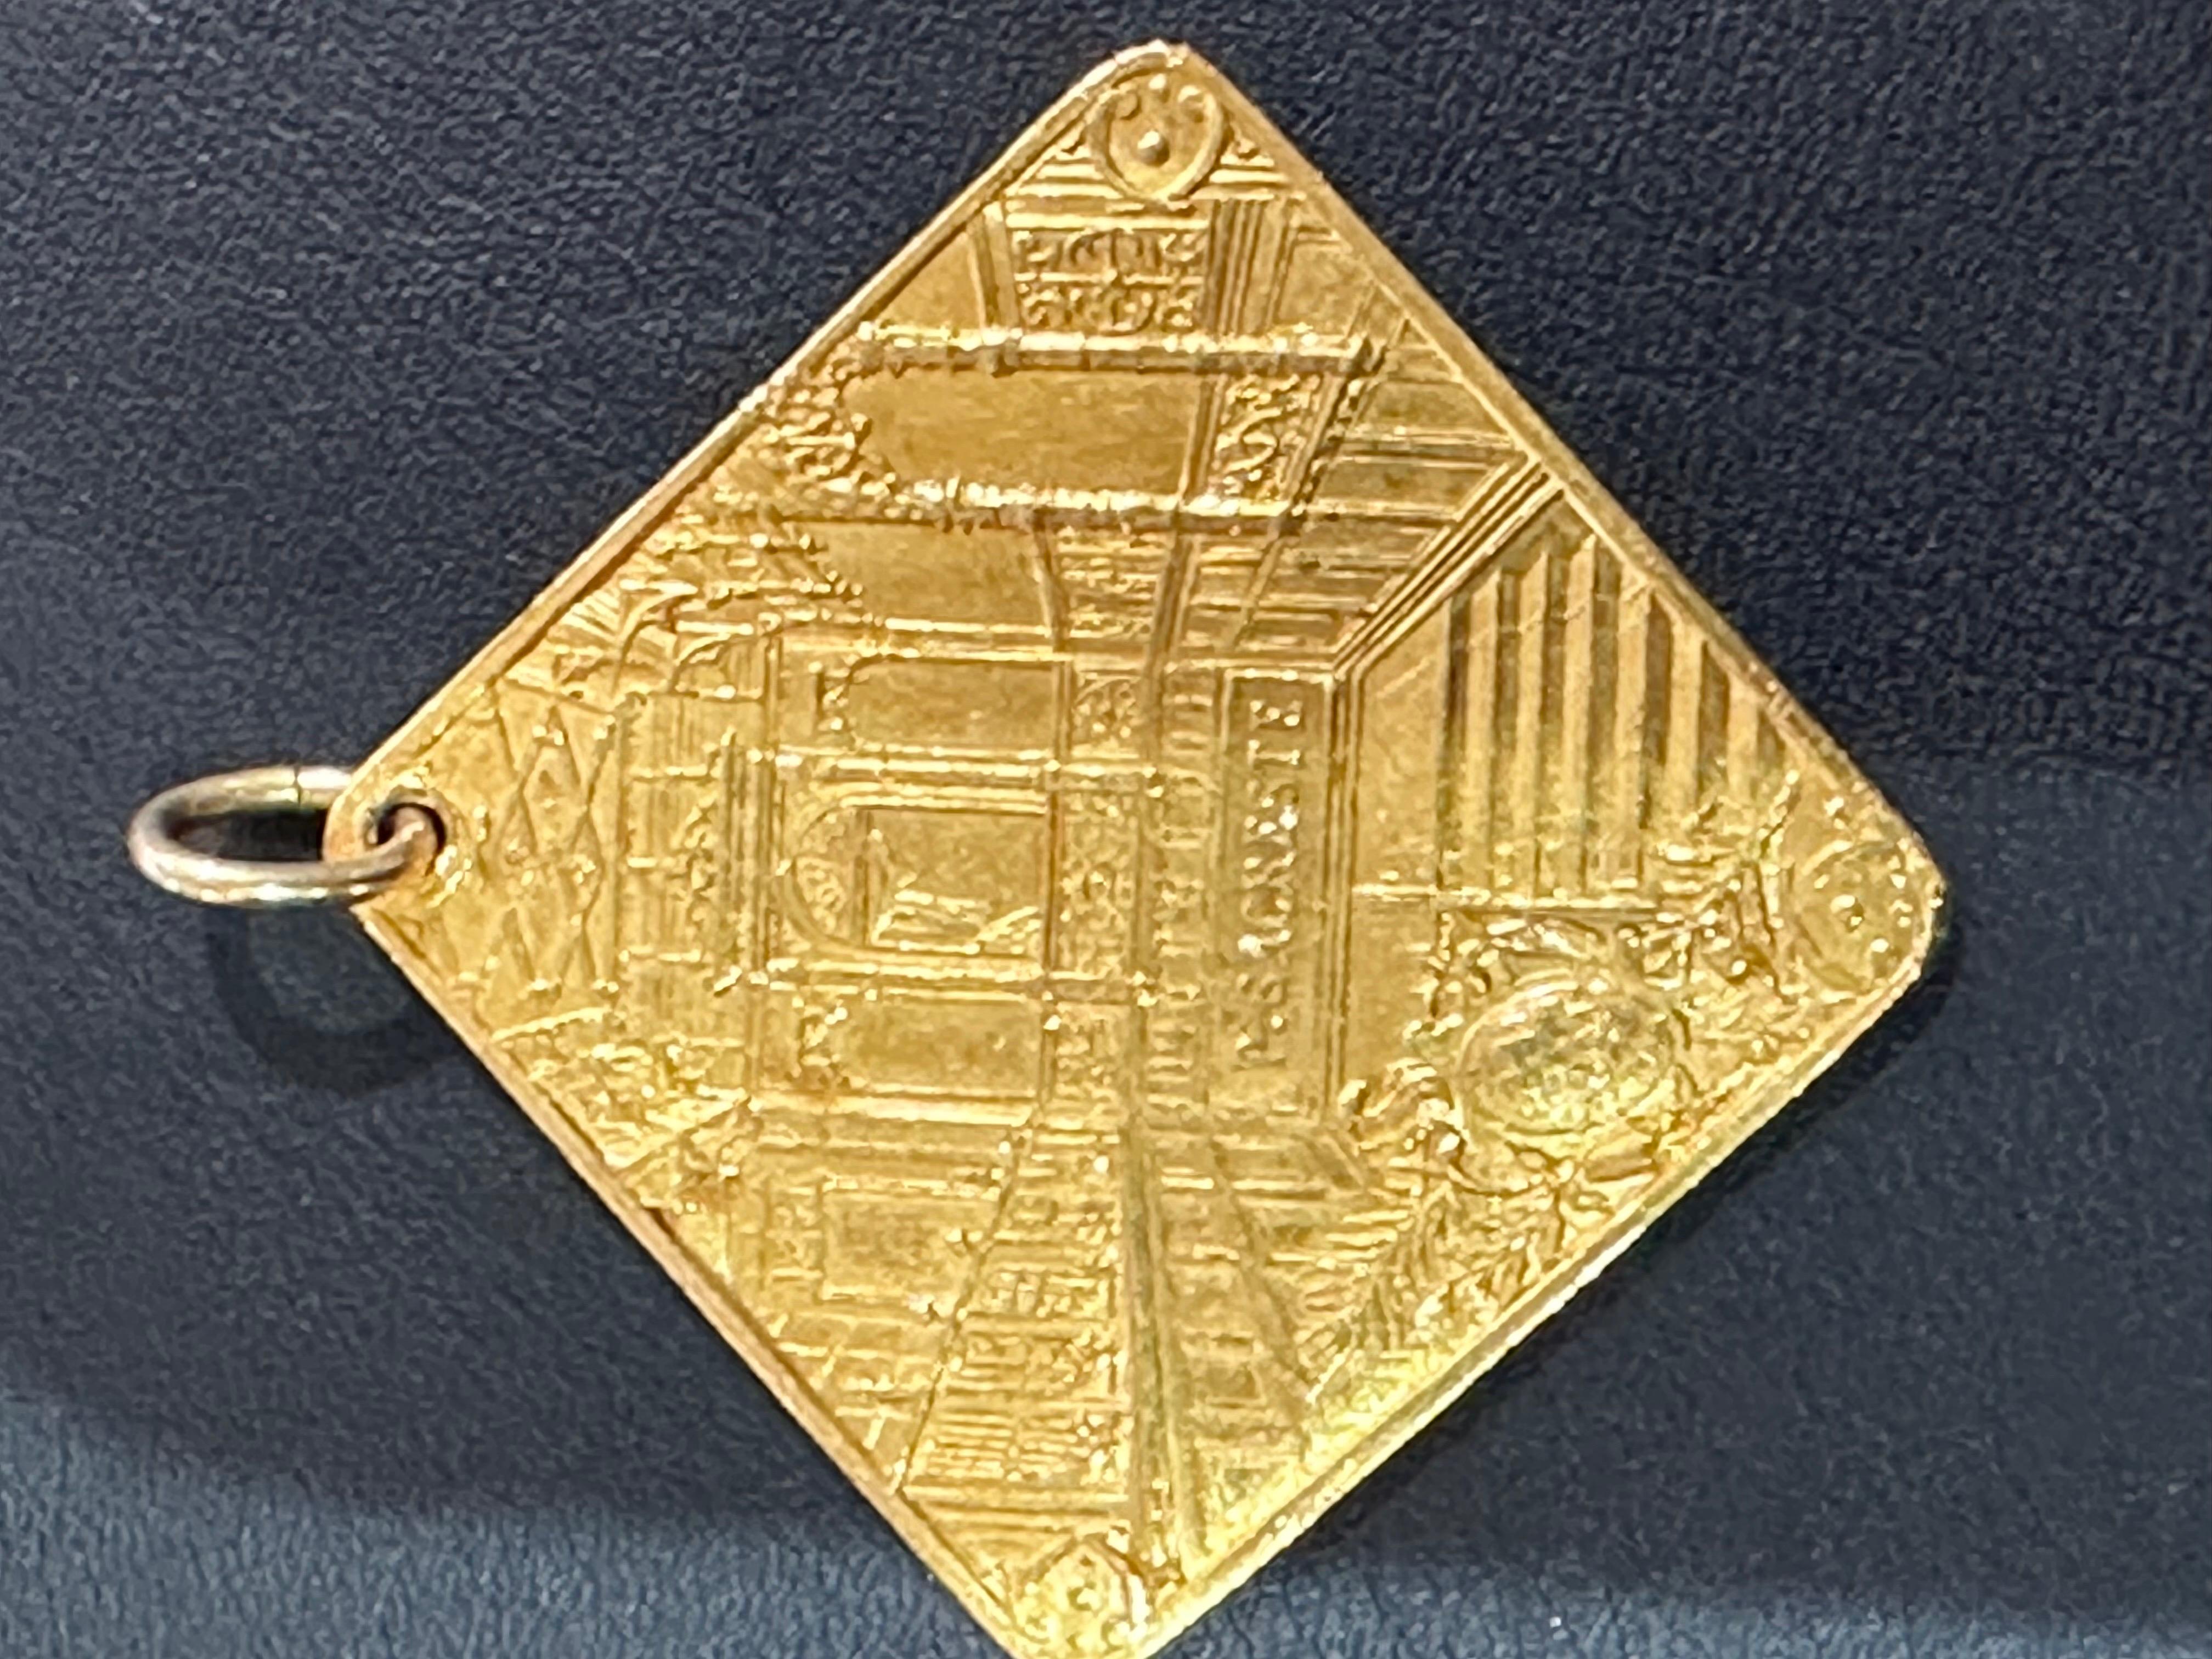 Médaille d'honneur en or jaune 18 carats de Portois House
Médaille d'honneur en or jaune 18 carats

Médaille de forme carrée représentant deux hommes nommés : A.PORTOIS. et A.FIX dont le portrait est très finement ciselé. De l'autre côté un décor